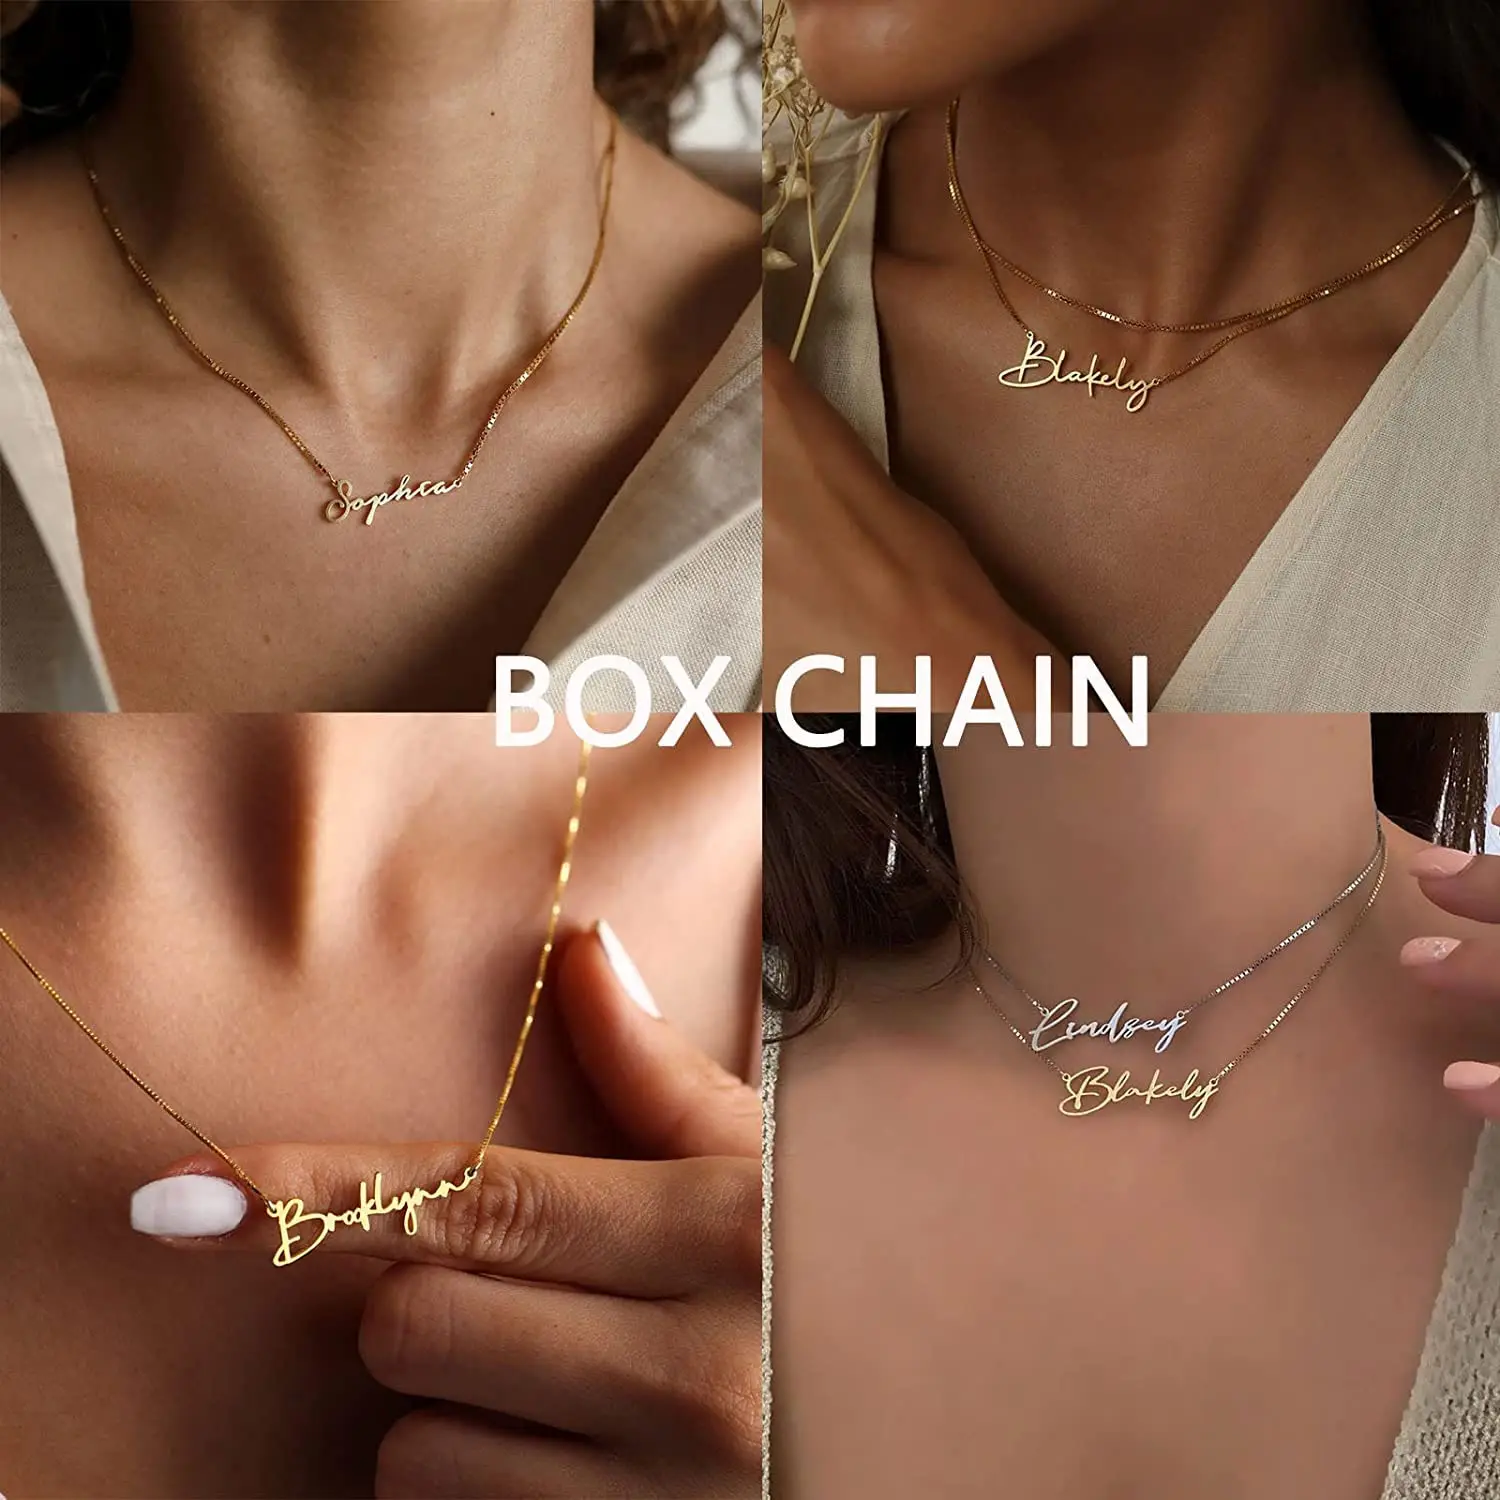 Colar com nomes personalizados, colar banhado a vácuo de ouro 18k, colar de aço inoxidável, letra personalizada, para mulheres